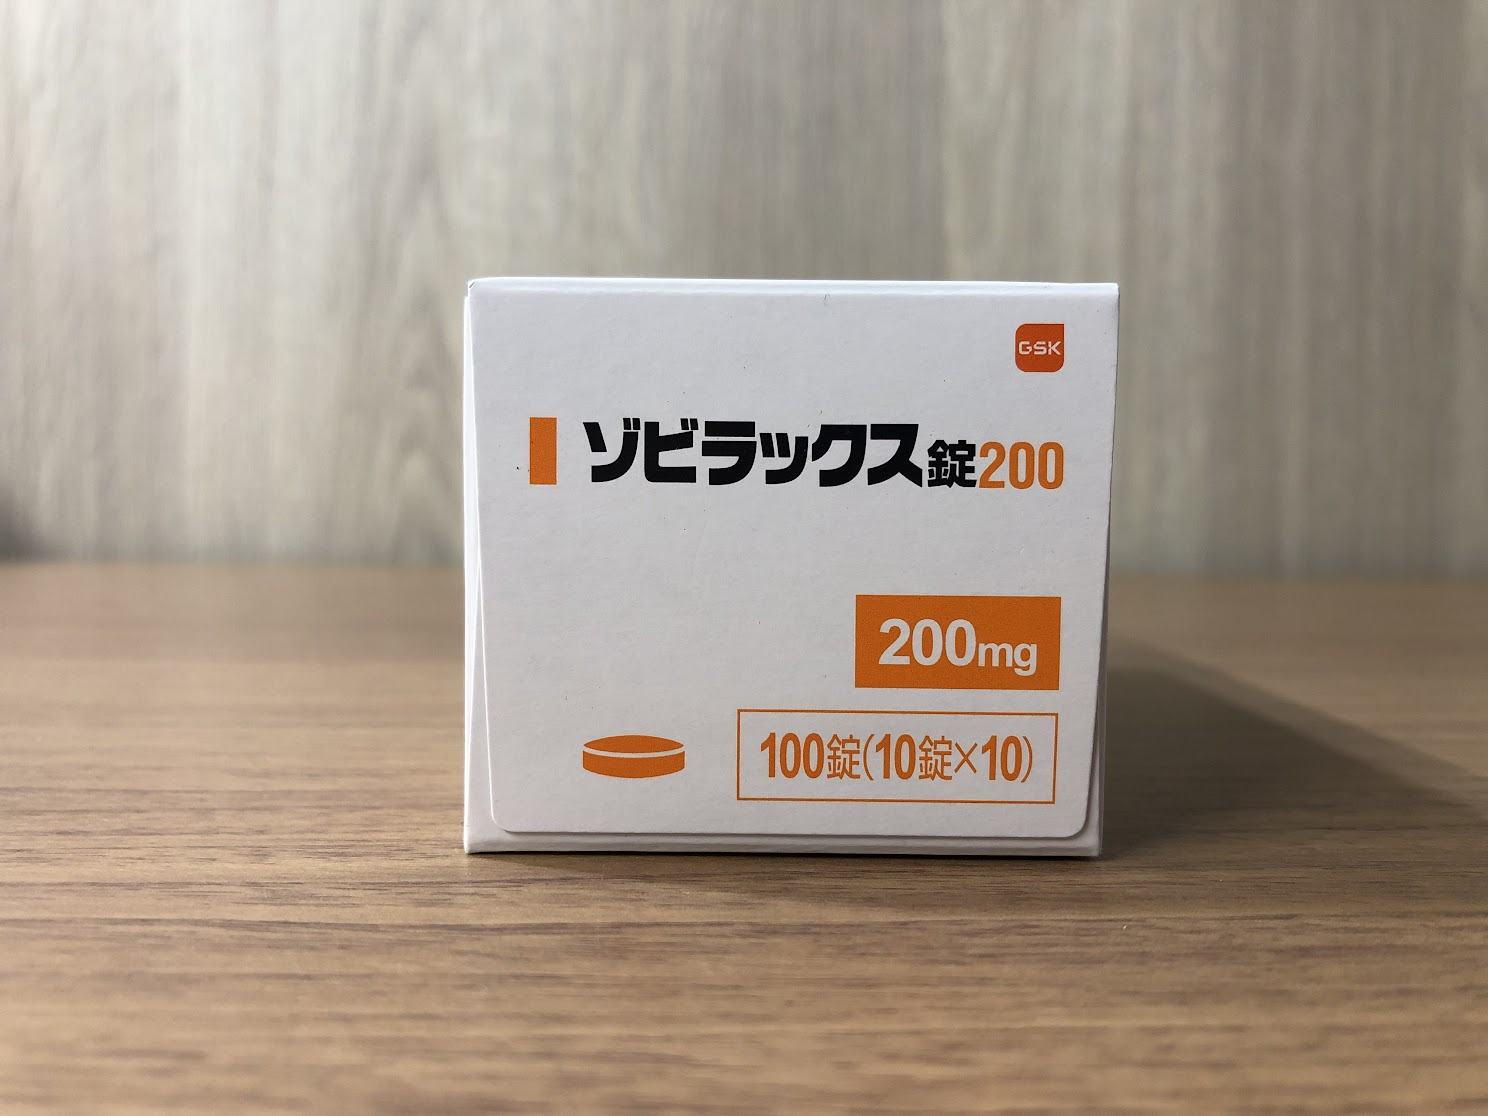 阿昔洛韦片 Aciclovir Tablets /Zovirax